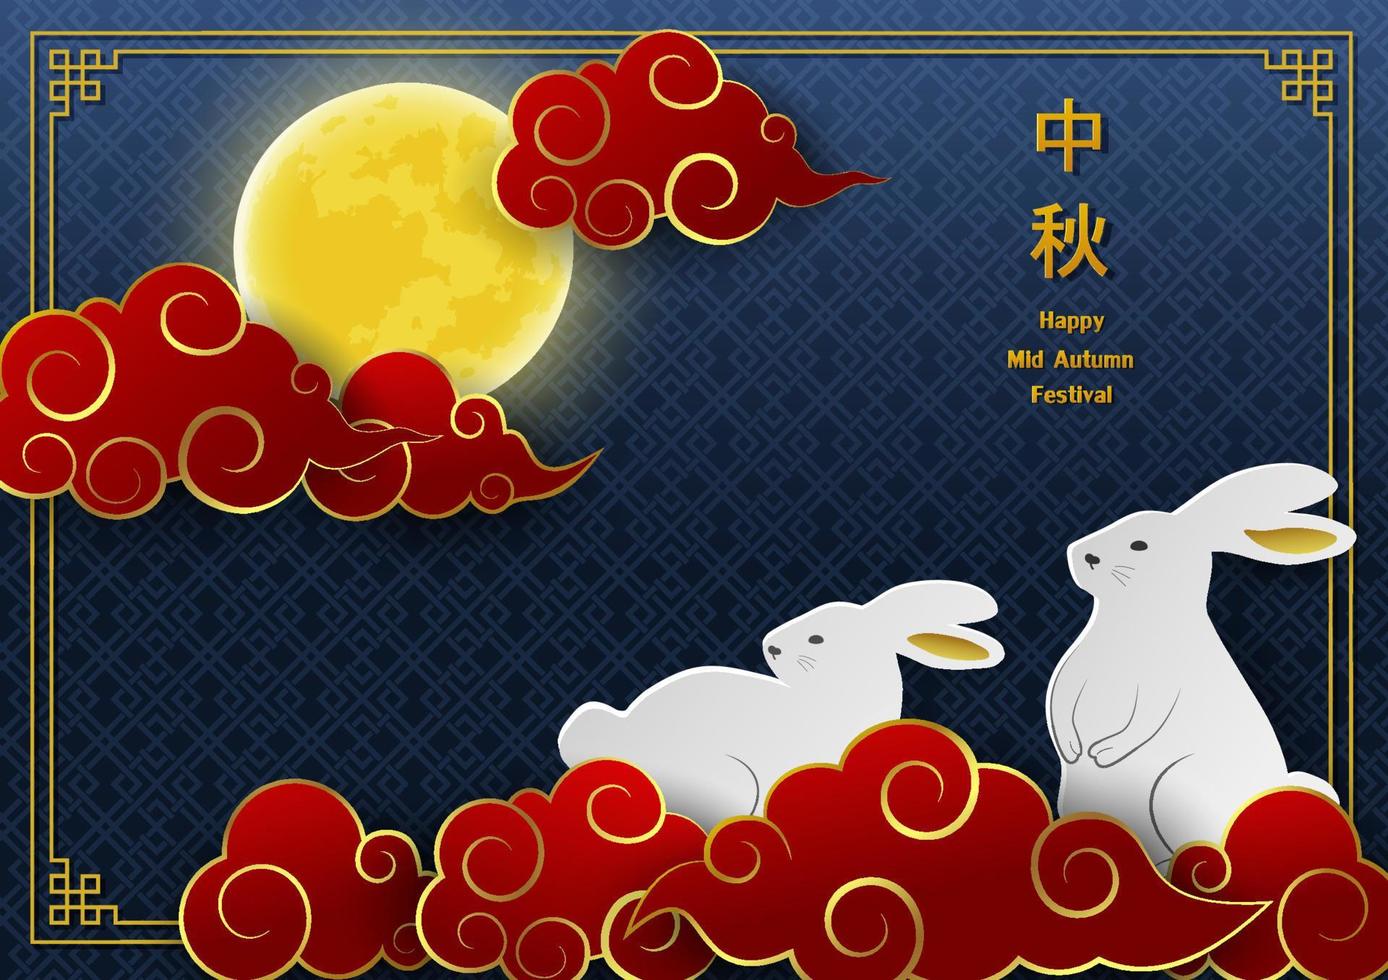 Gruß Karte zum Mitte Herbst oder Mond Fest, asiatisch Elemente auf Blau Hintergrund mit voll Mond, süß Kaninchen und Wolke, chinesisch Übersetzen bedeuten Mitte Herbst Festival vektor